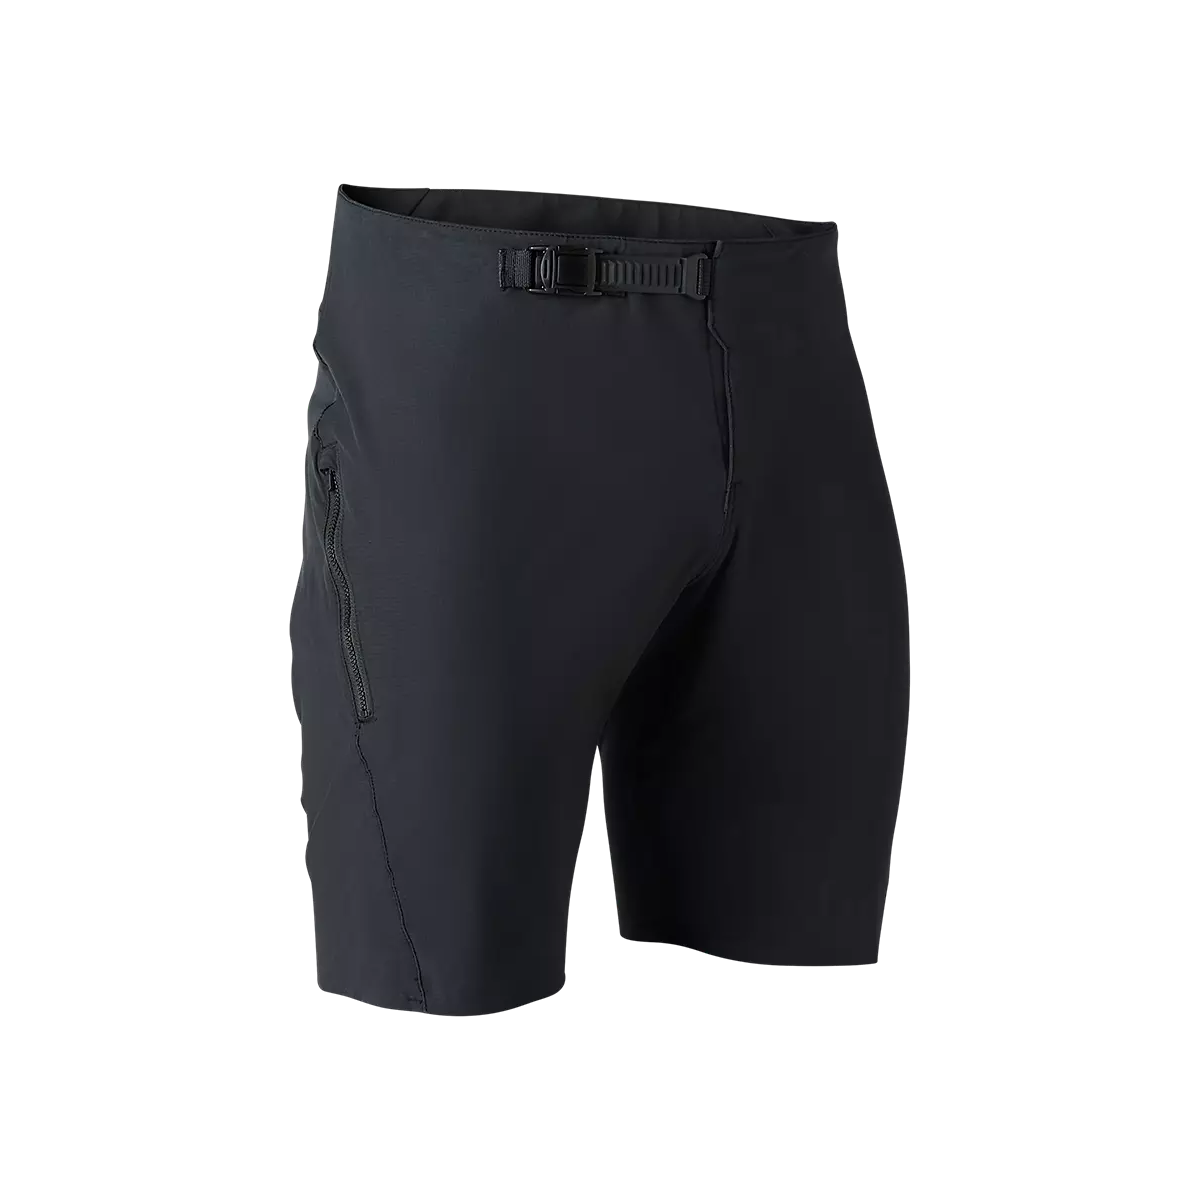 Pantalón corto Fox Flexair Ascent en color negro con badana extraible 30652-001